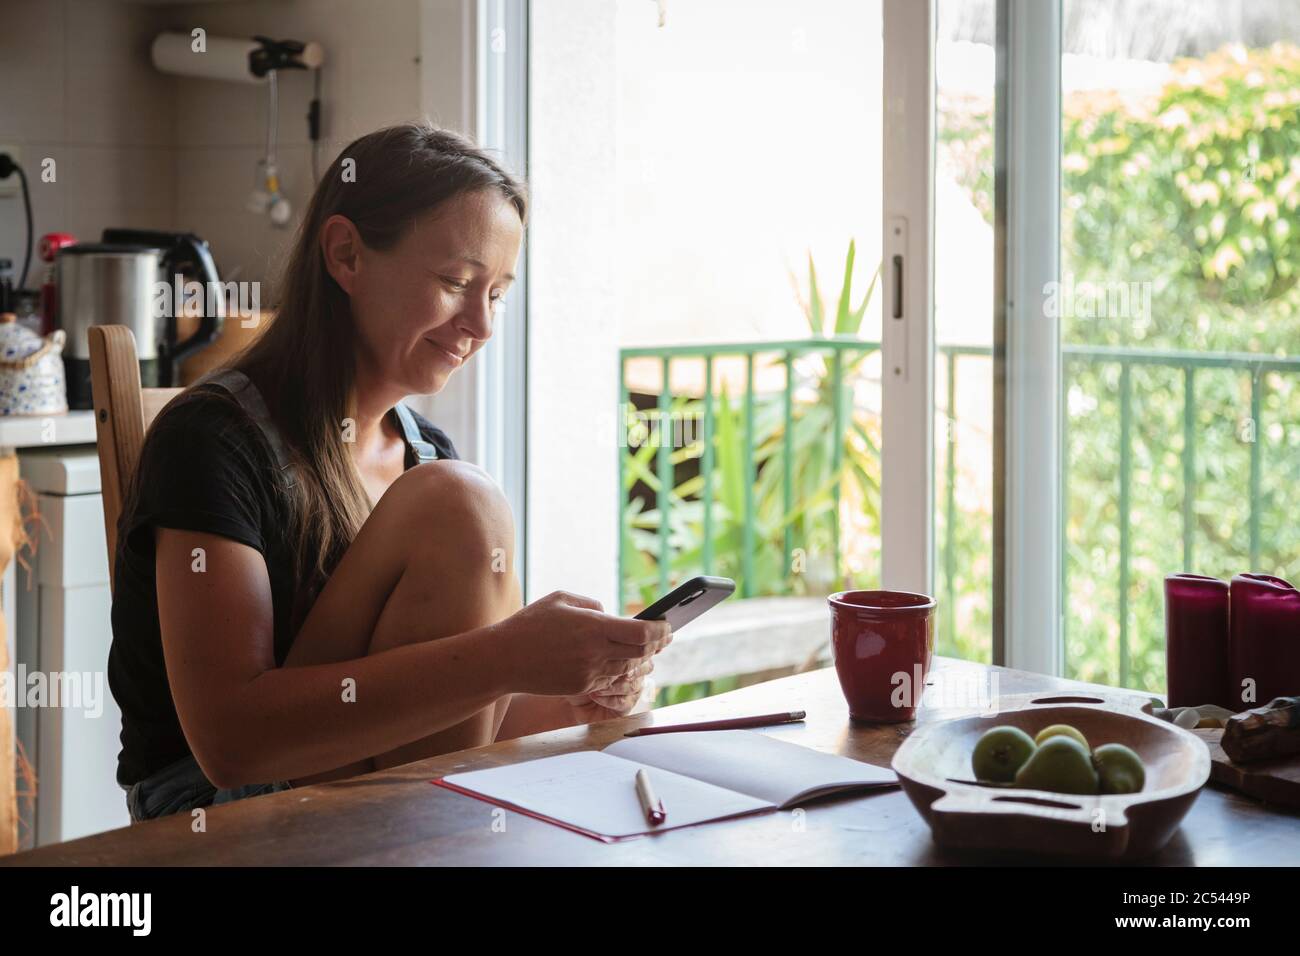 Jeune femme assise sur une table de cuisine en bois avec une atmosphère détendue en vérifiant son smartphone et en écrivant des notes; concept de style de vie naturel, simplicité Banque D'Images